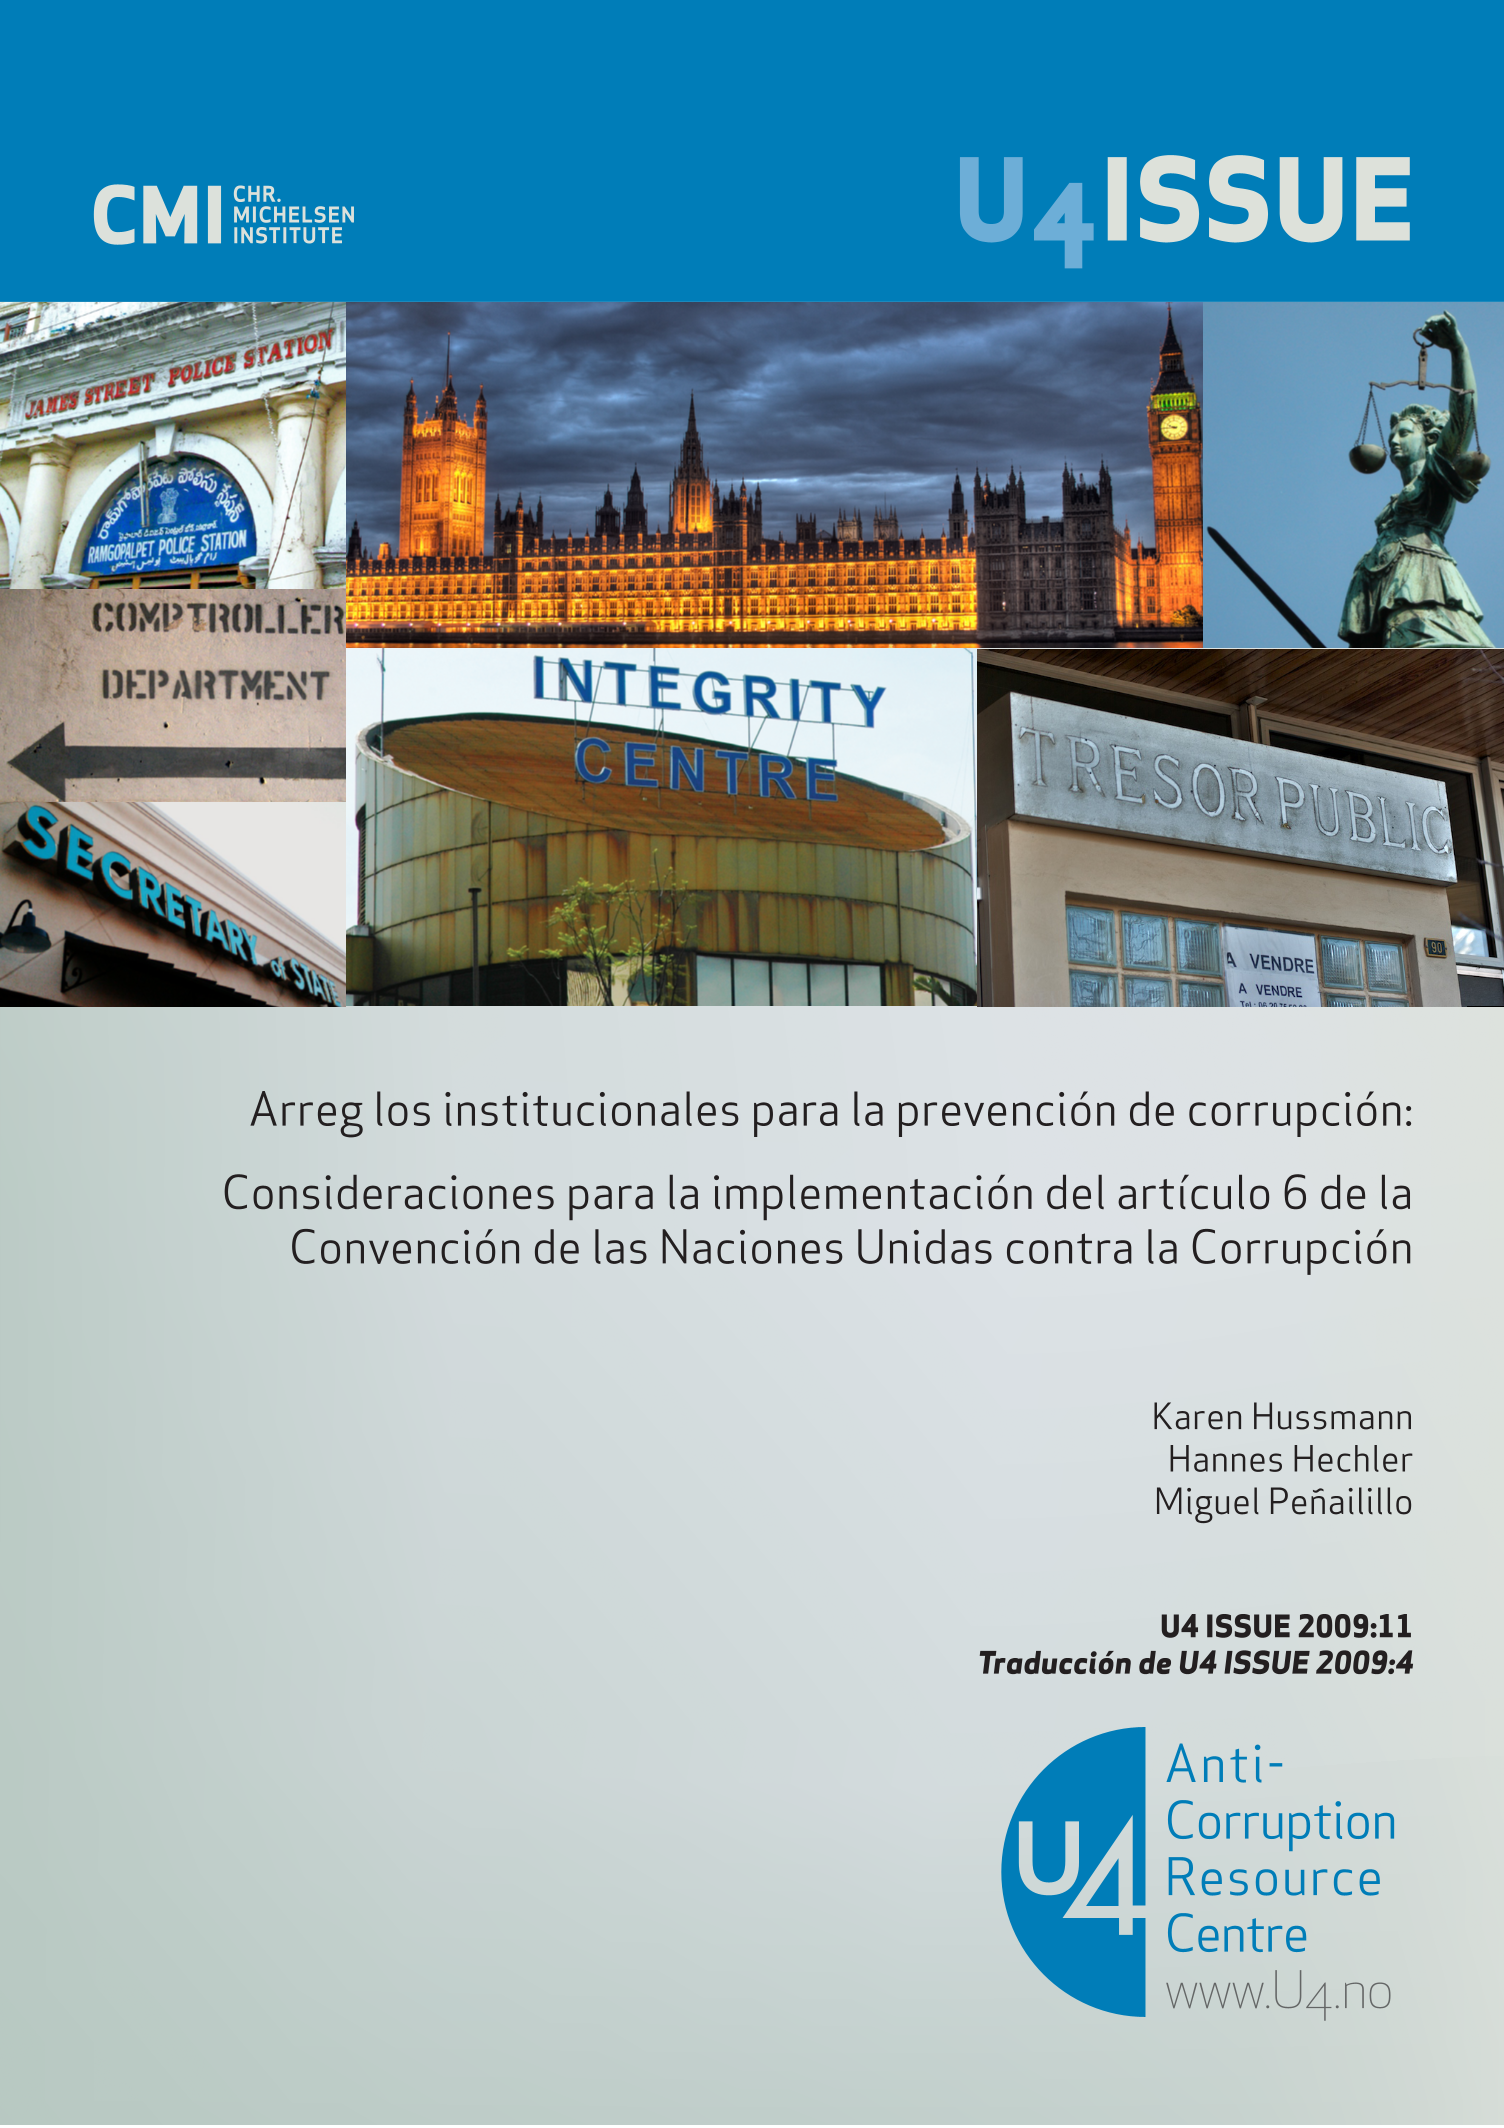 Arreglos institucionales para la prevención de corrupción: Consideraciones para la implementación del artículo 6 de la Convención de las Naciones Unidas contra la Corrupción